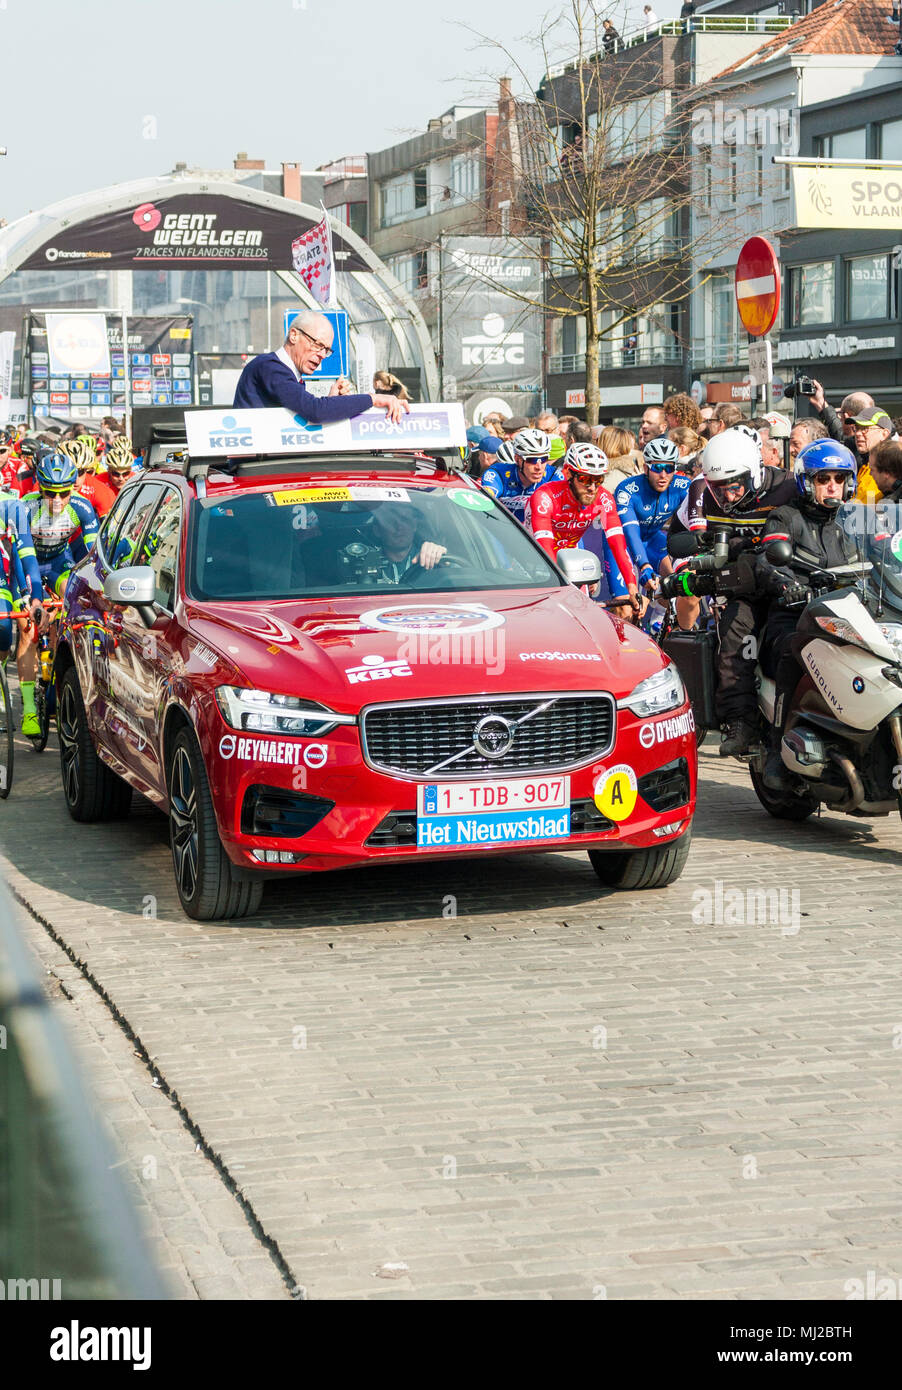 La voiture de commissaire au début de Gent-Wevelgem, l'UCI World Tour, course cycliste. Deinze, Belgique, 2018 Banque D'Images